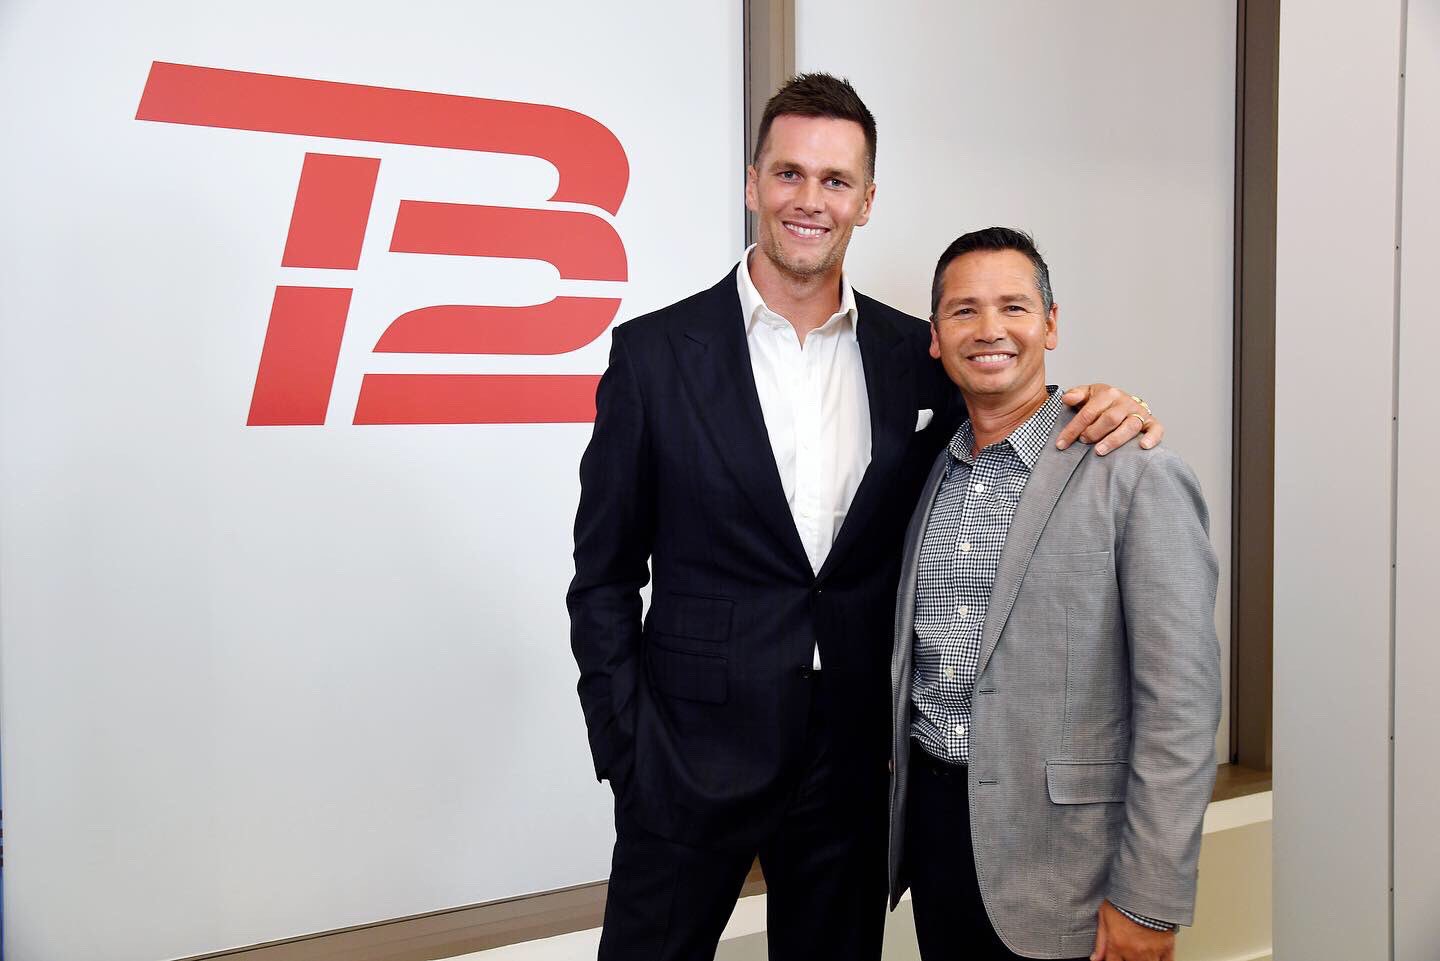 Tom Brady's TB12 Taking Global Approach to Company Growth